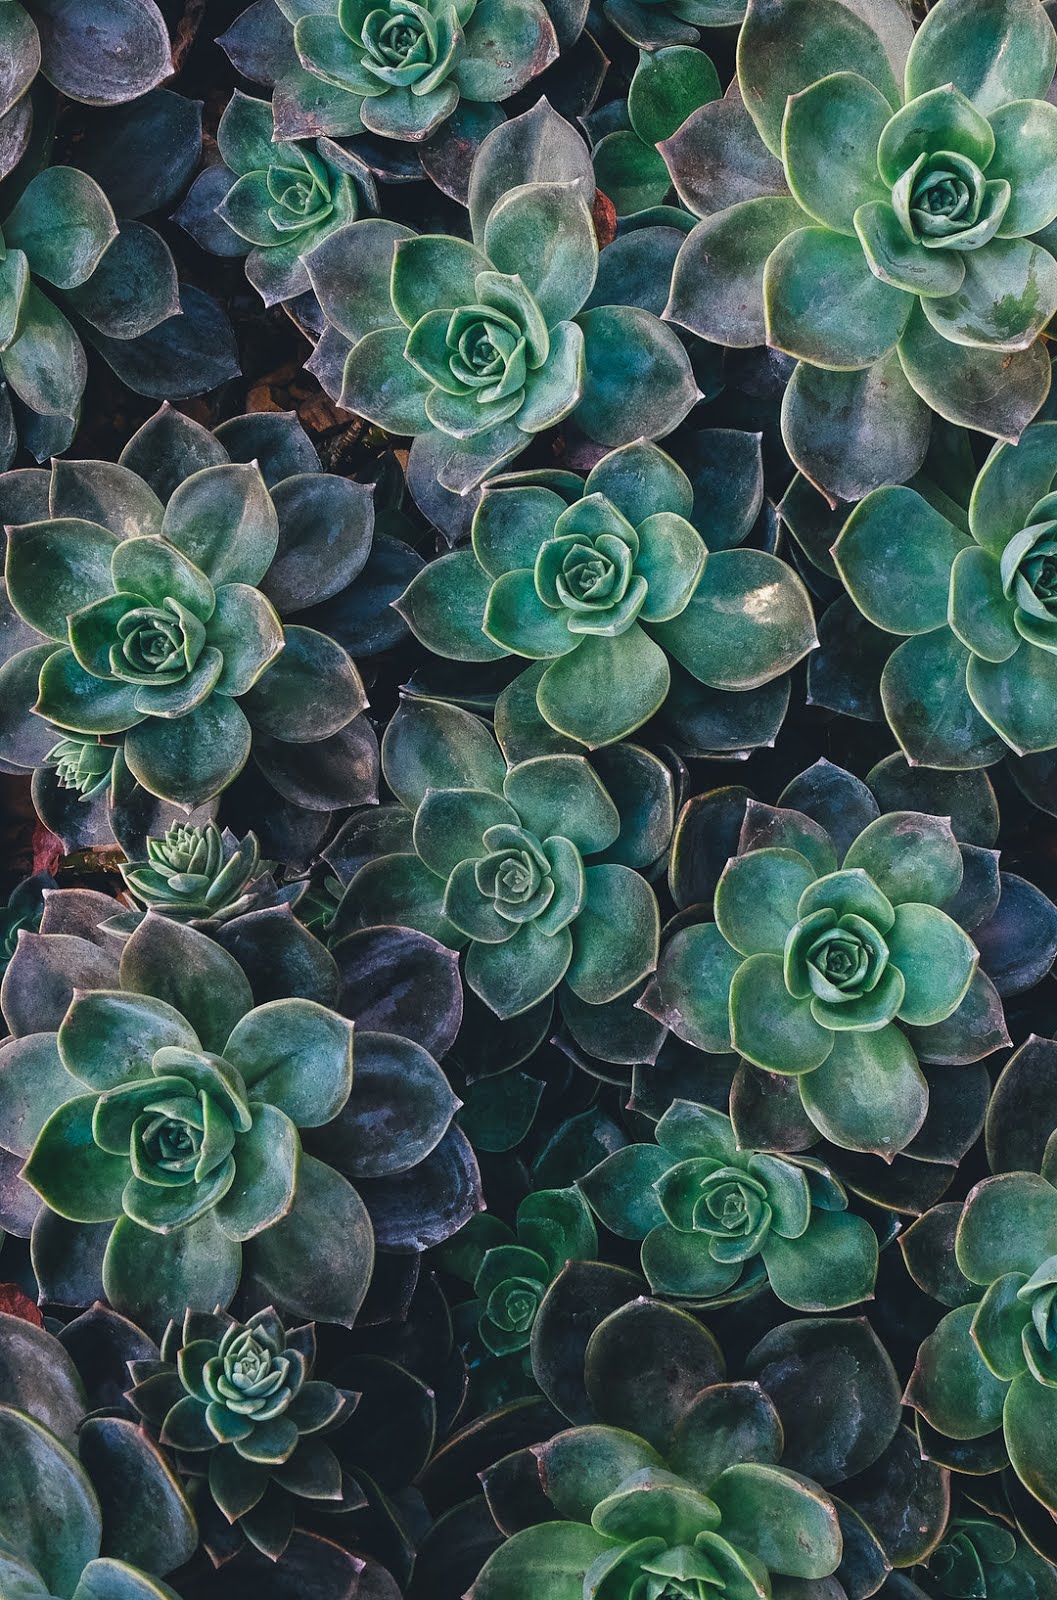 ازهار خضراء جميلة متفتحة خلفيات ايفون 6s